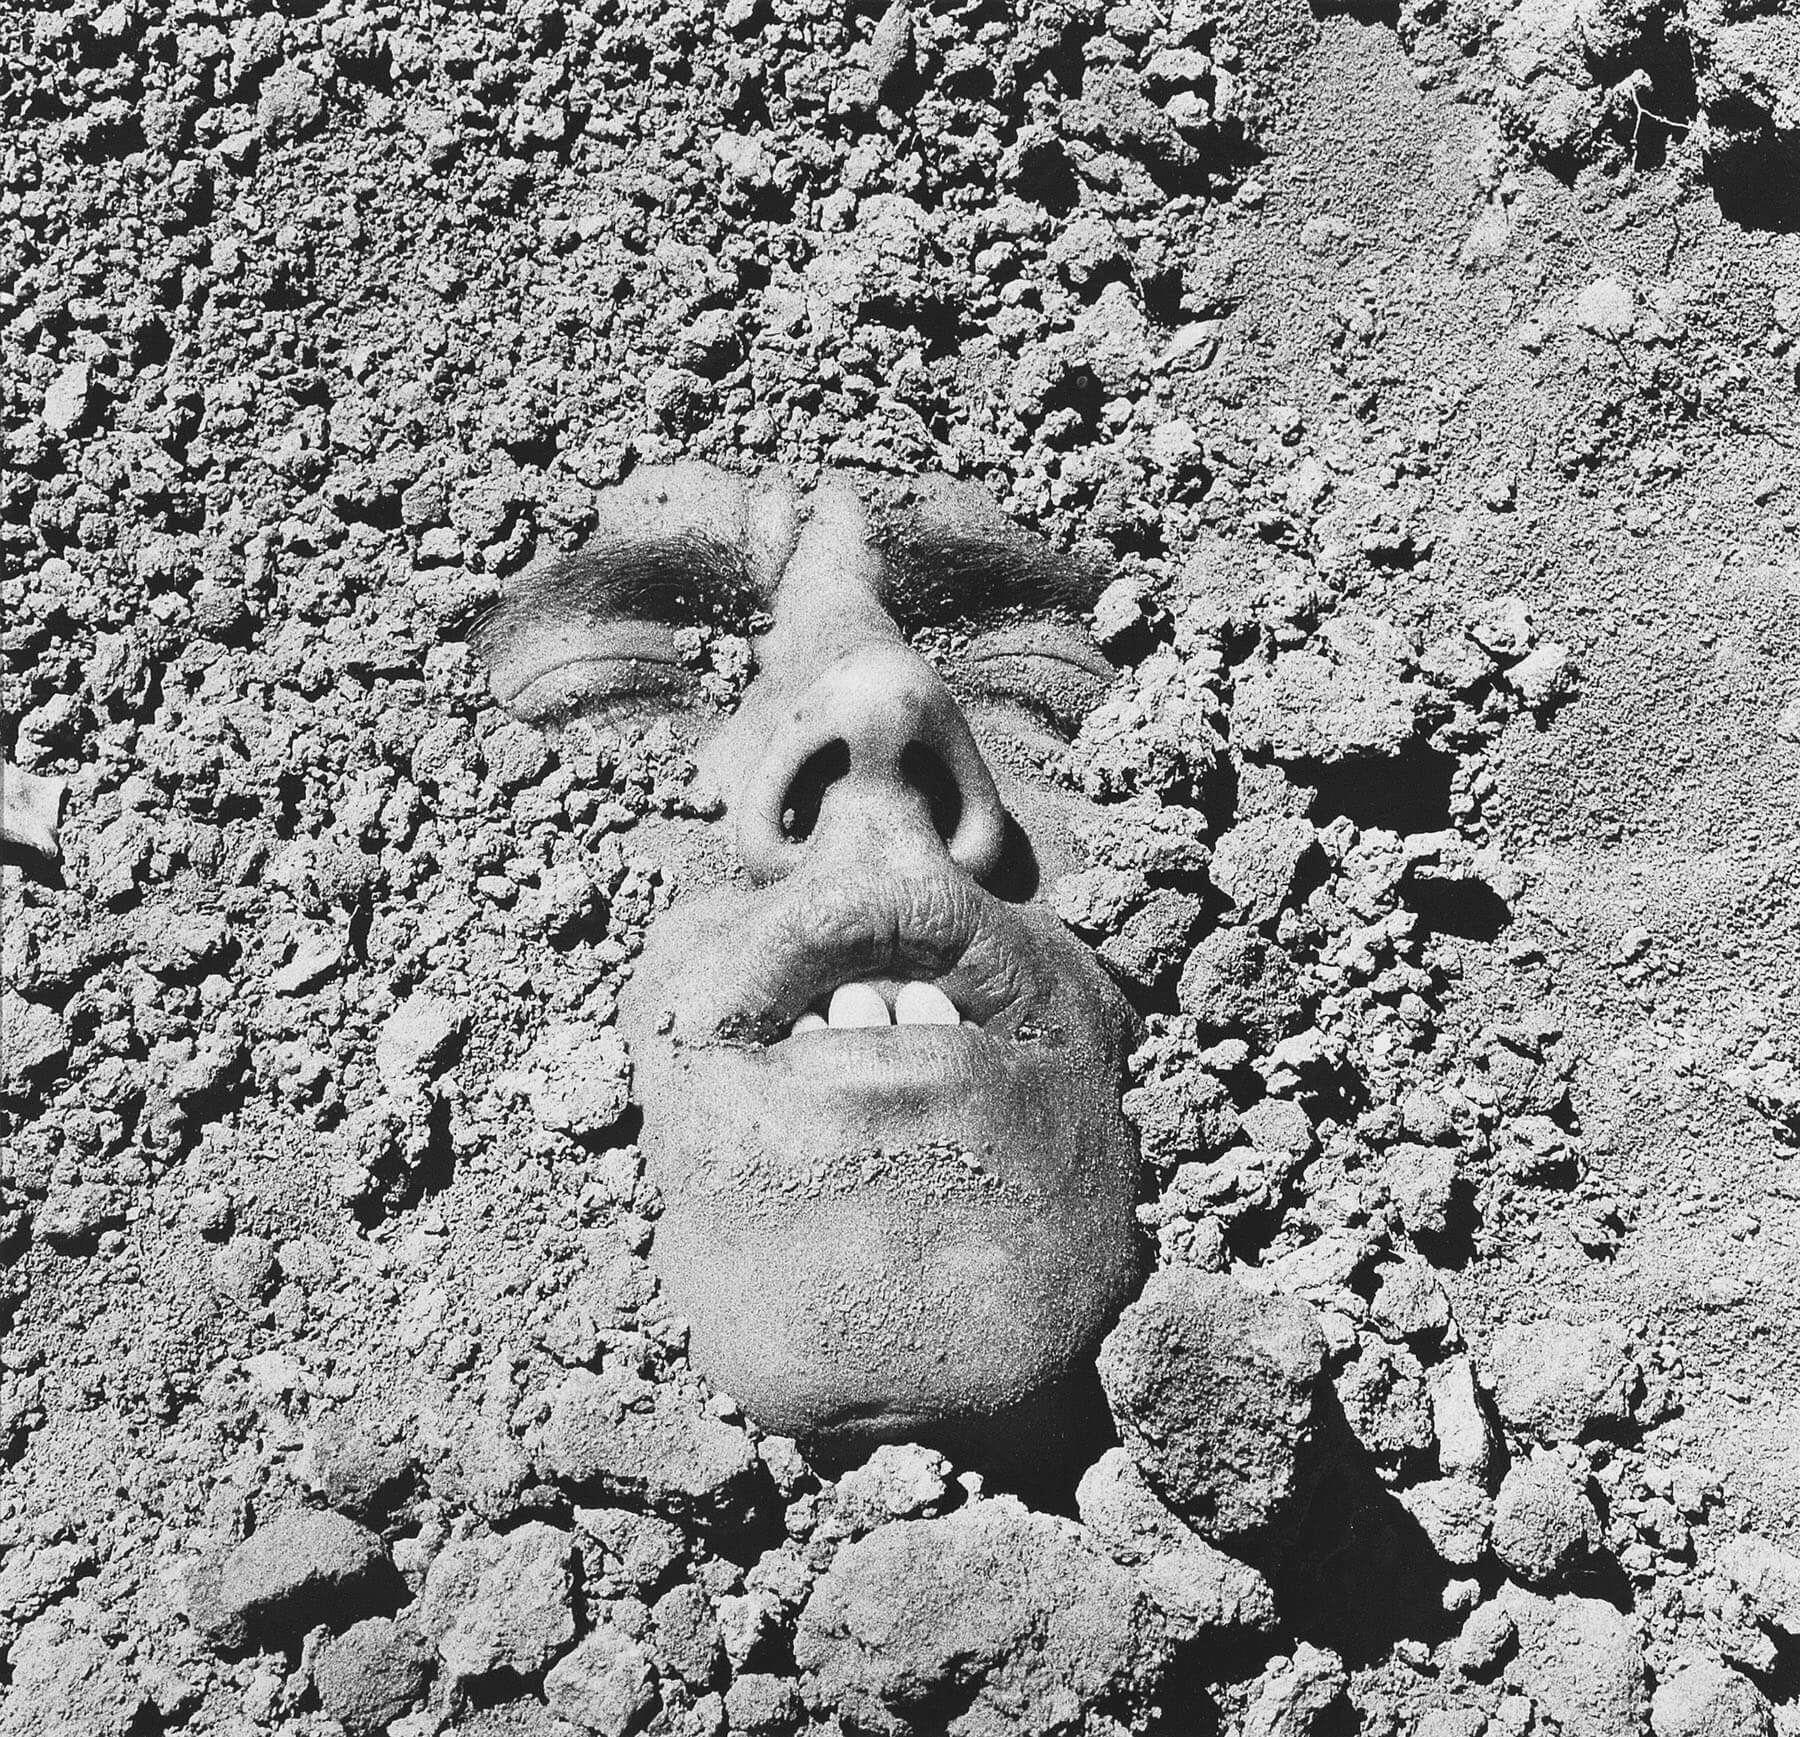 David Wojnarowics, face in dirt